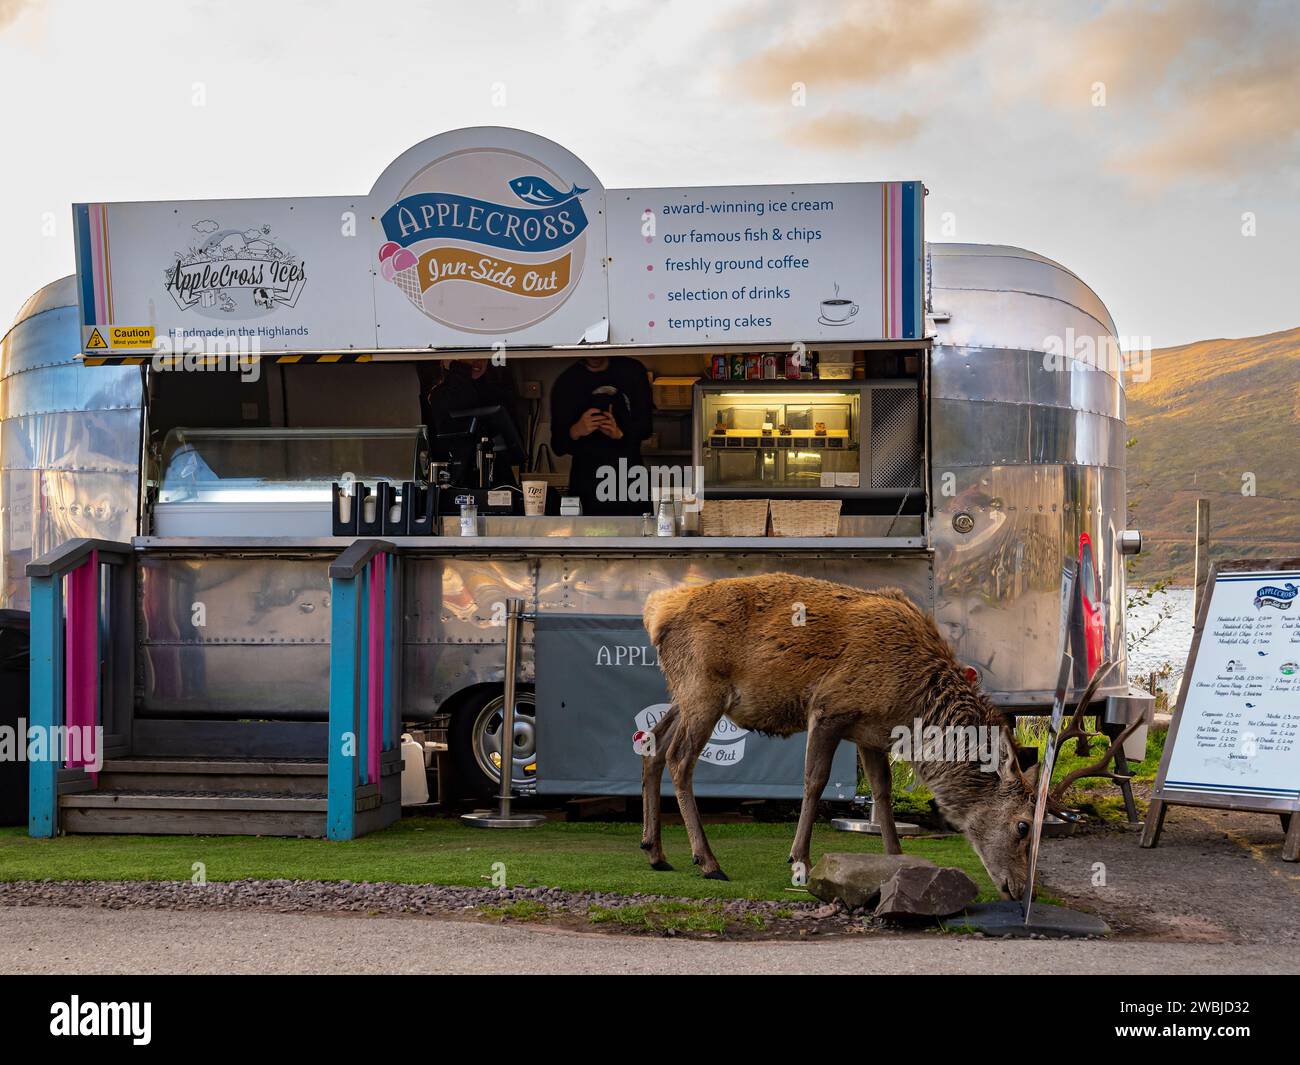 Inn-side rétro food truck à l'extérieur de l'Applecross Inn avec un Stag manger à l'avant, Applecross, Wester Ross, Écosse, Royaume-Uni, Highlands Grande-Bretagne Banque D'Images